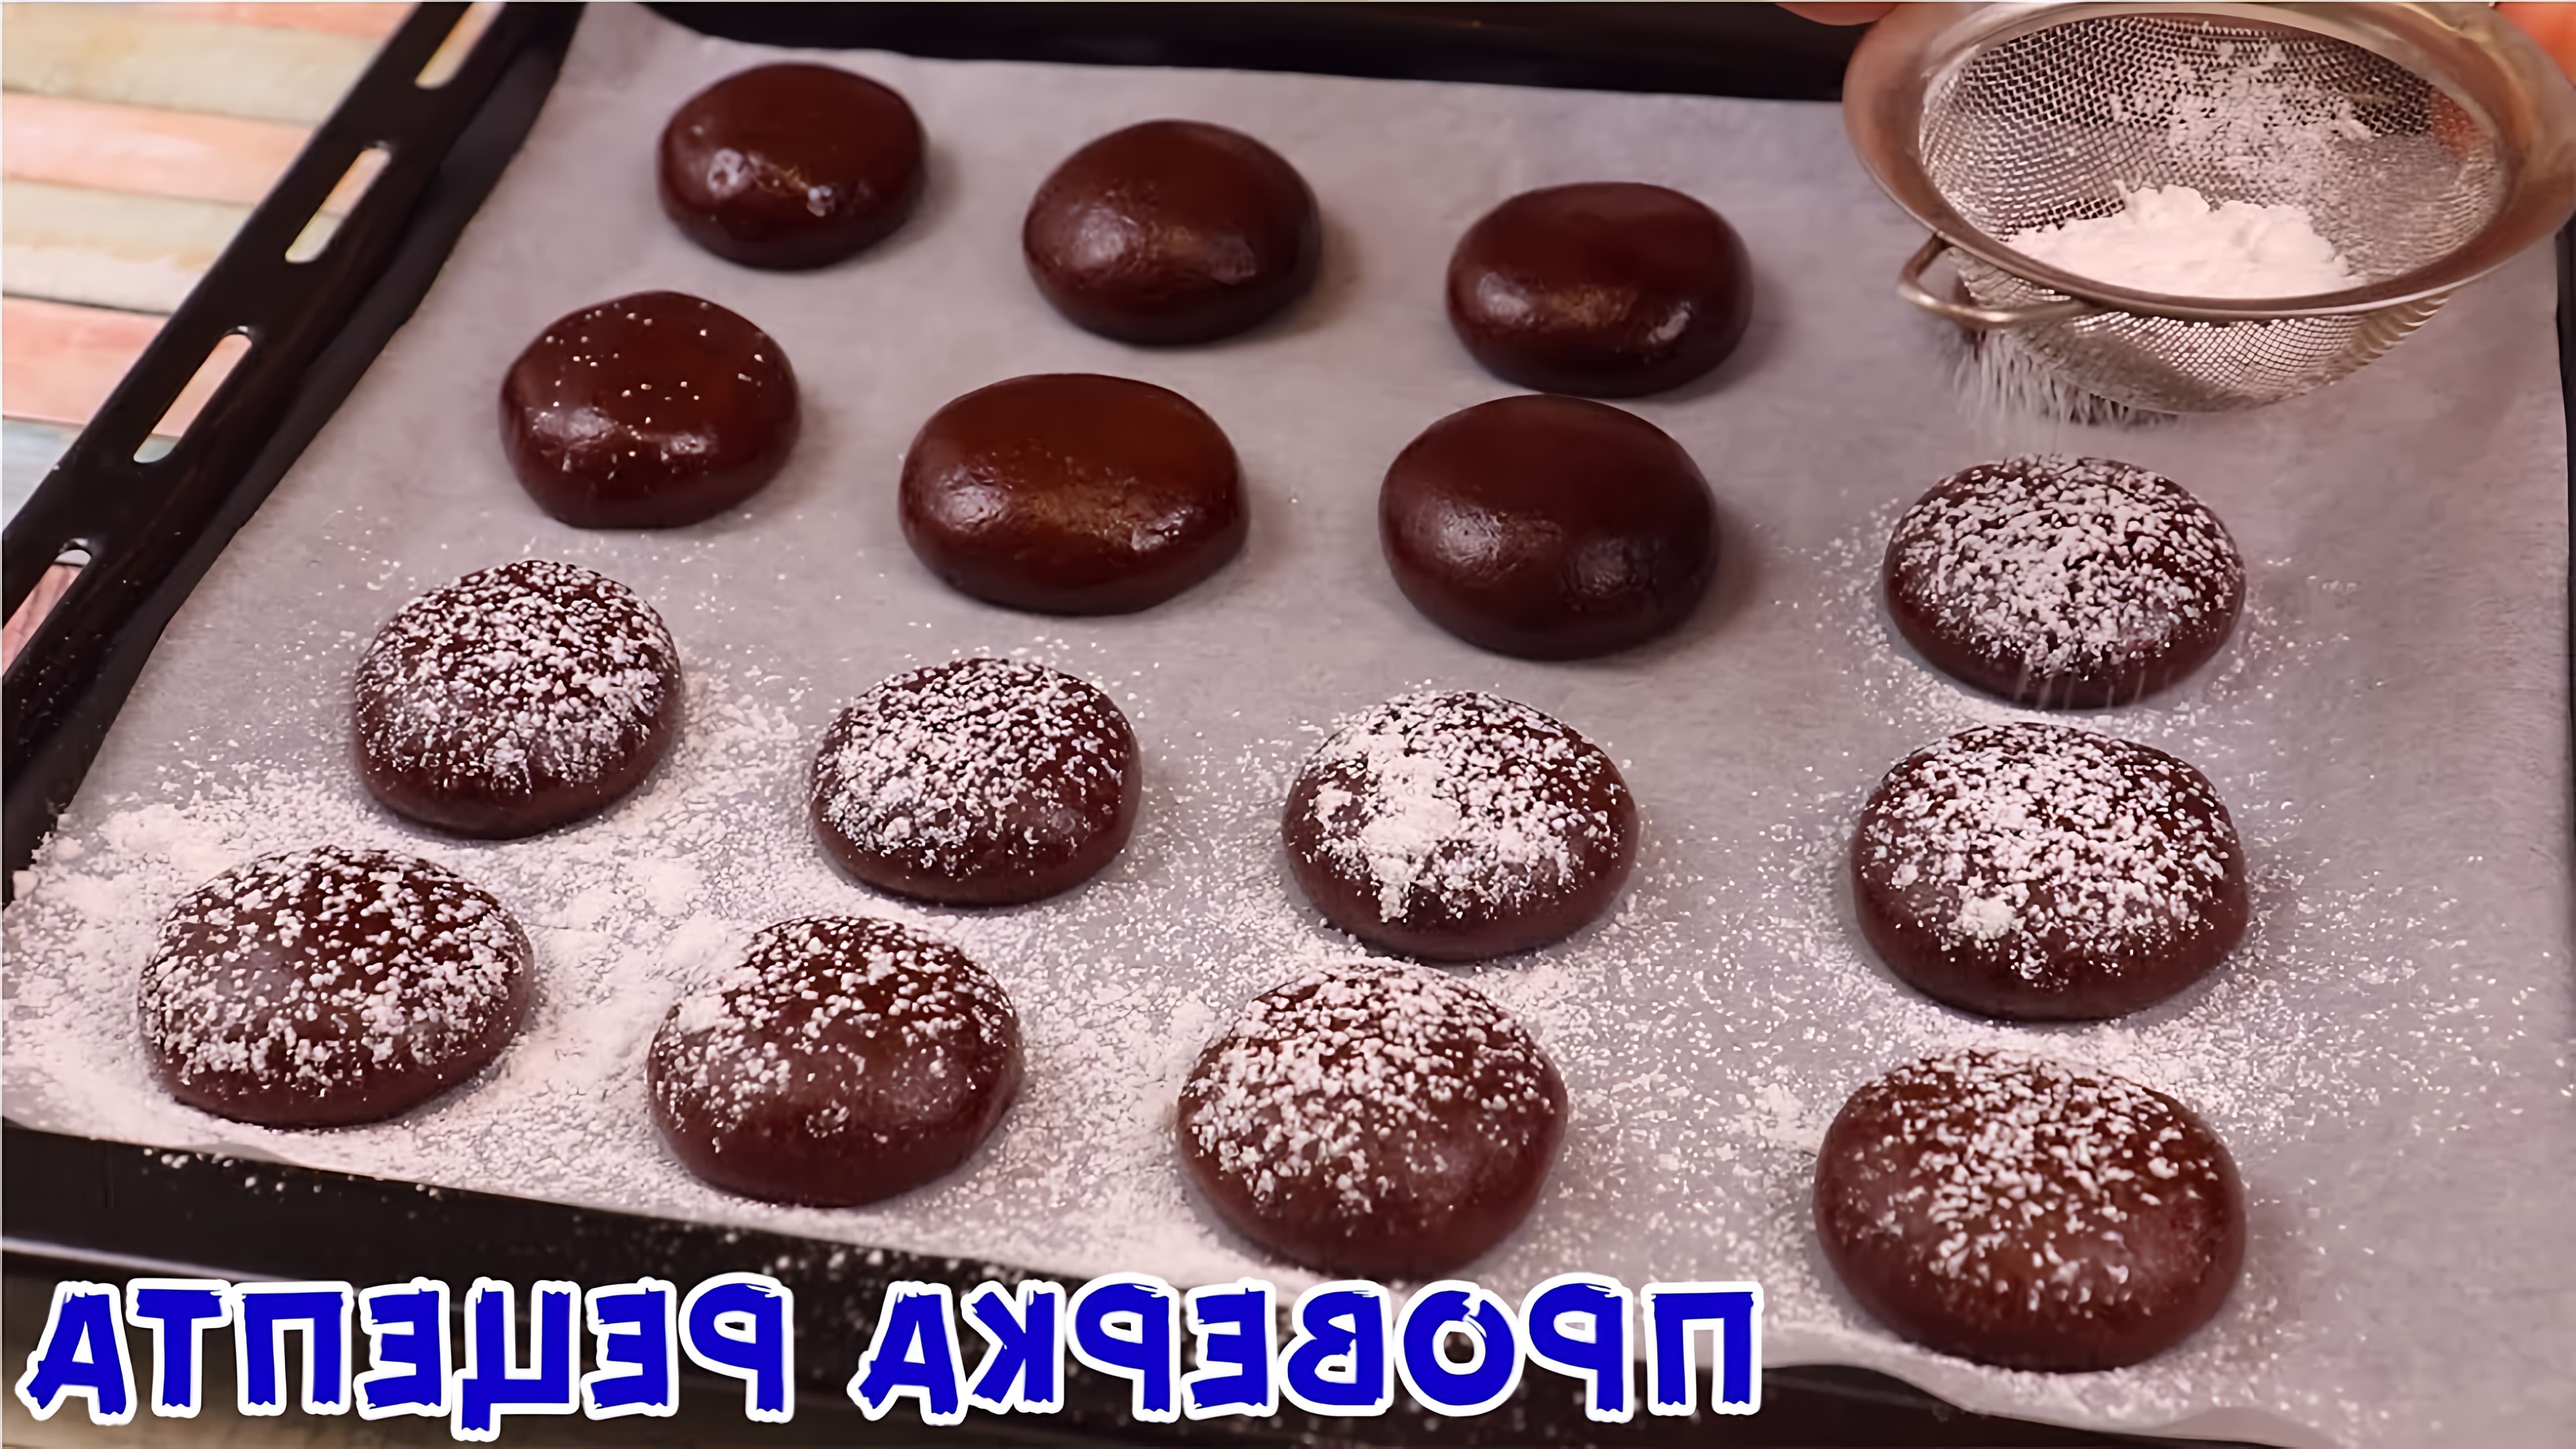 В этом видео демонстрируется рецепт приготовления мягкого печенья за 5 копеек